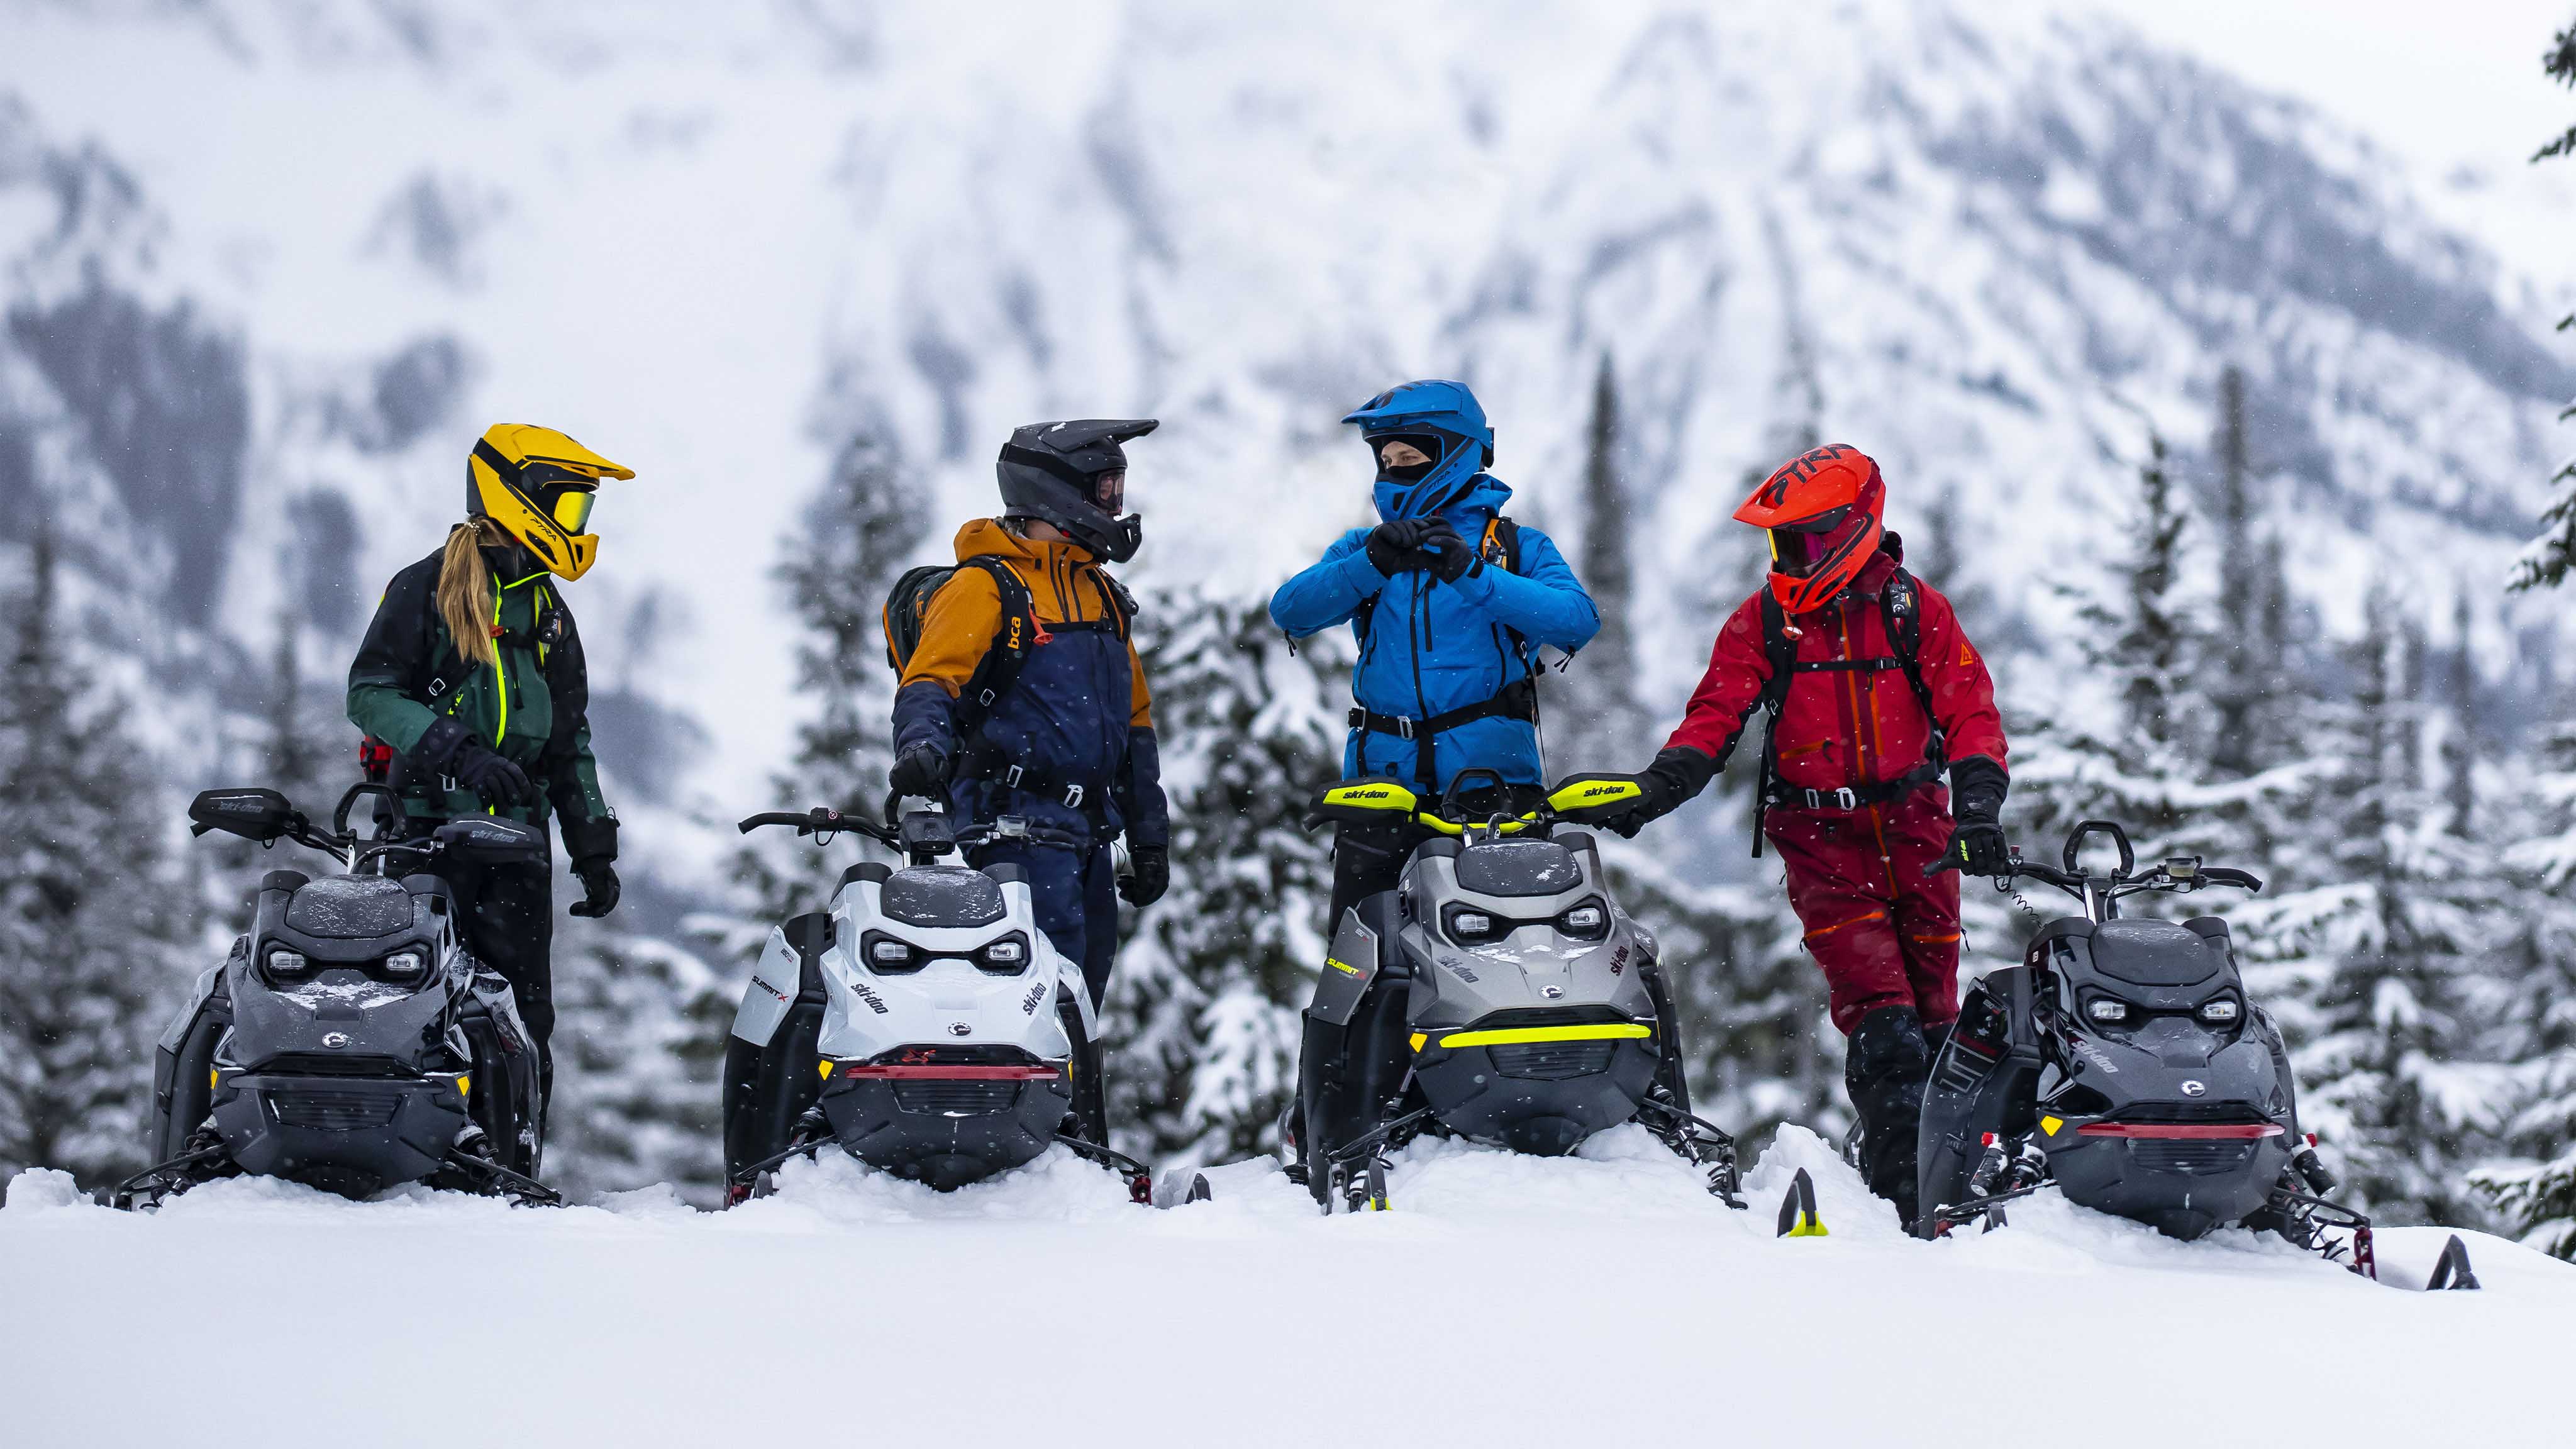 Fire ryttere på sine Ski-Doo snøscootere